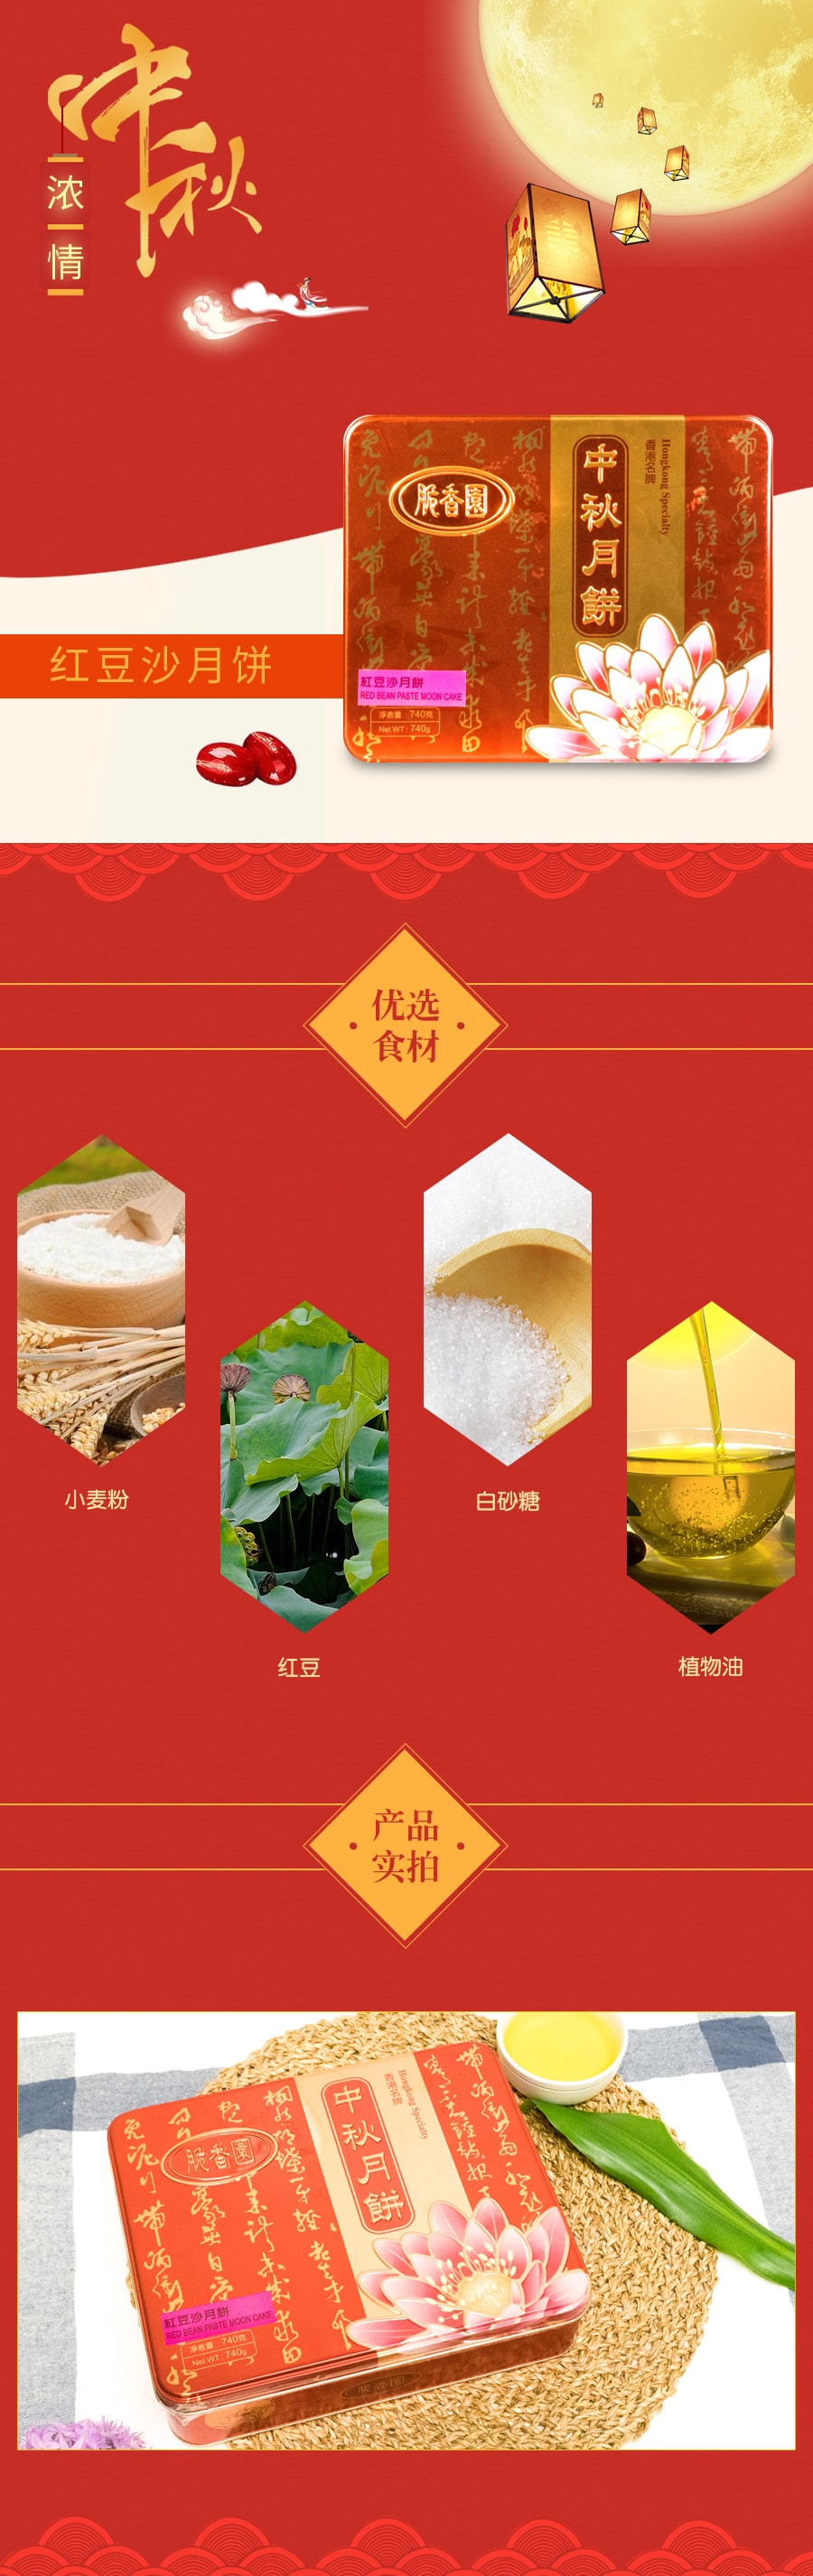 【全美超低价】香港脆香园 红豆沙中秋月饼 铁盒装 4枚入 740g